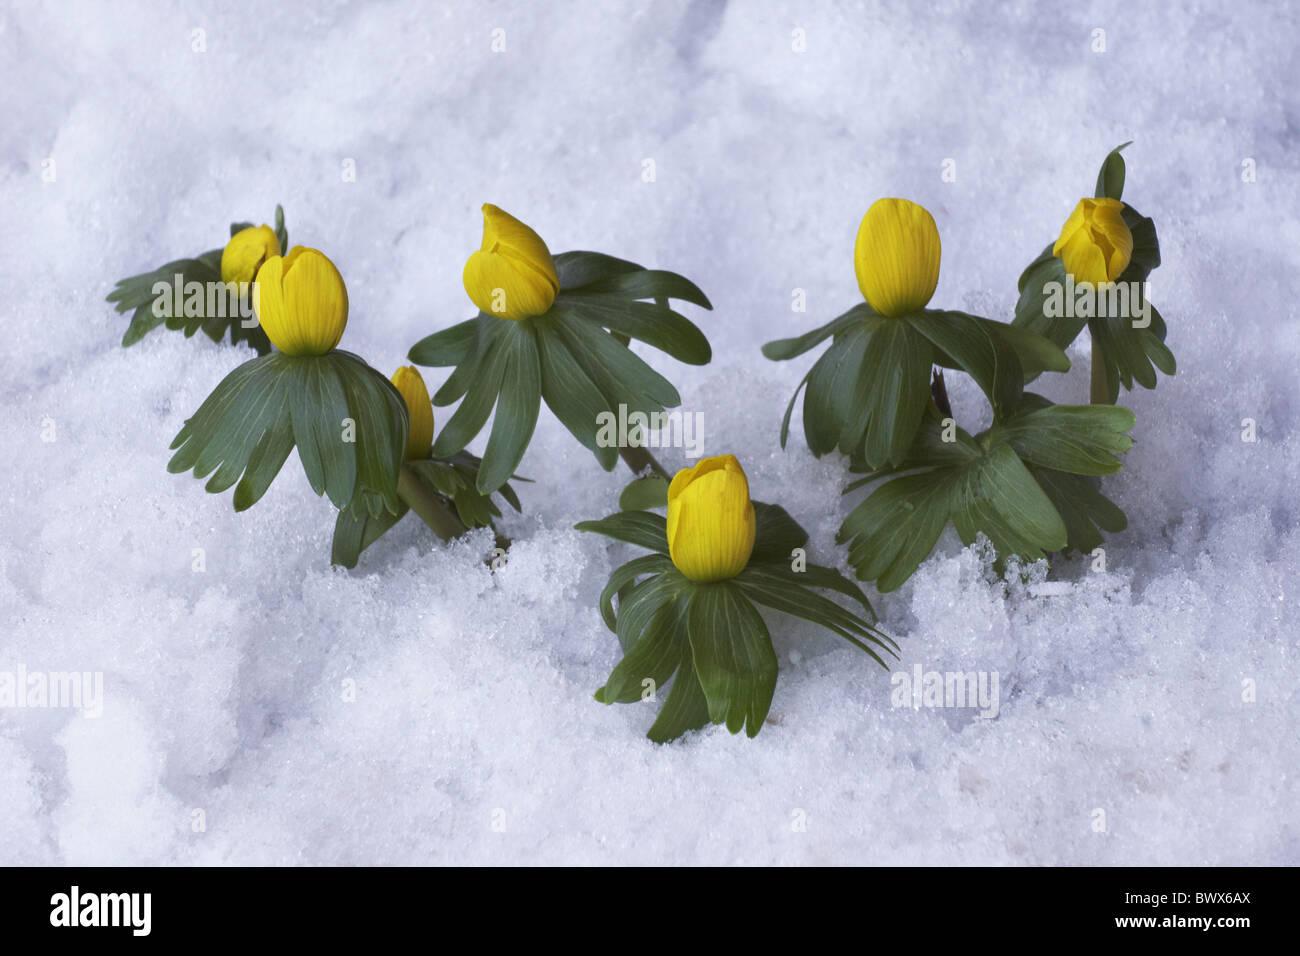 Winter Aconite Eranthis hyemalis flowerbuds Stock Photo - Alamy